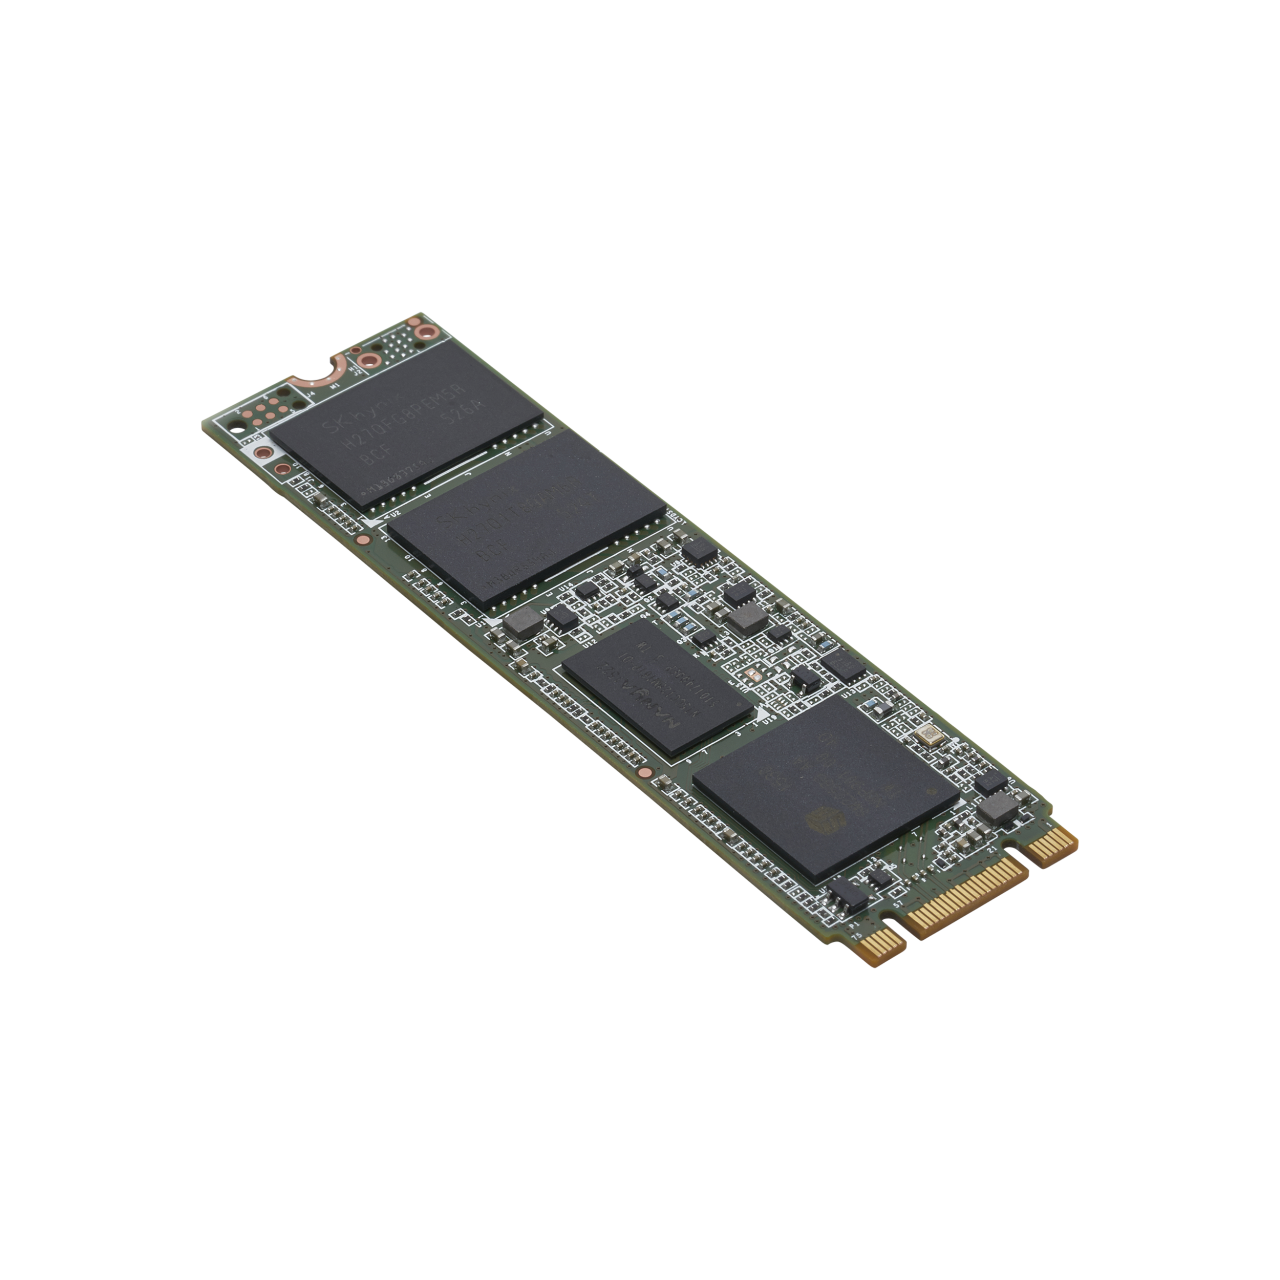 Intel SSD 540s 240GB, M.2